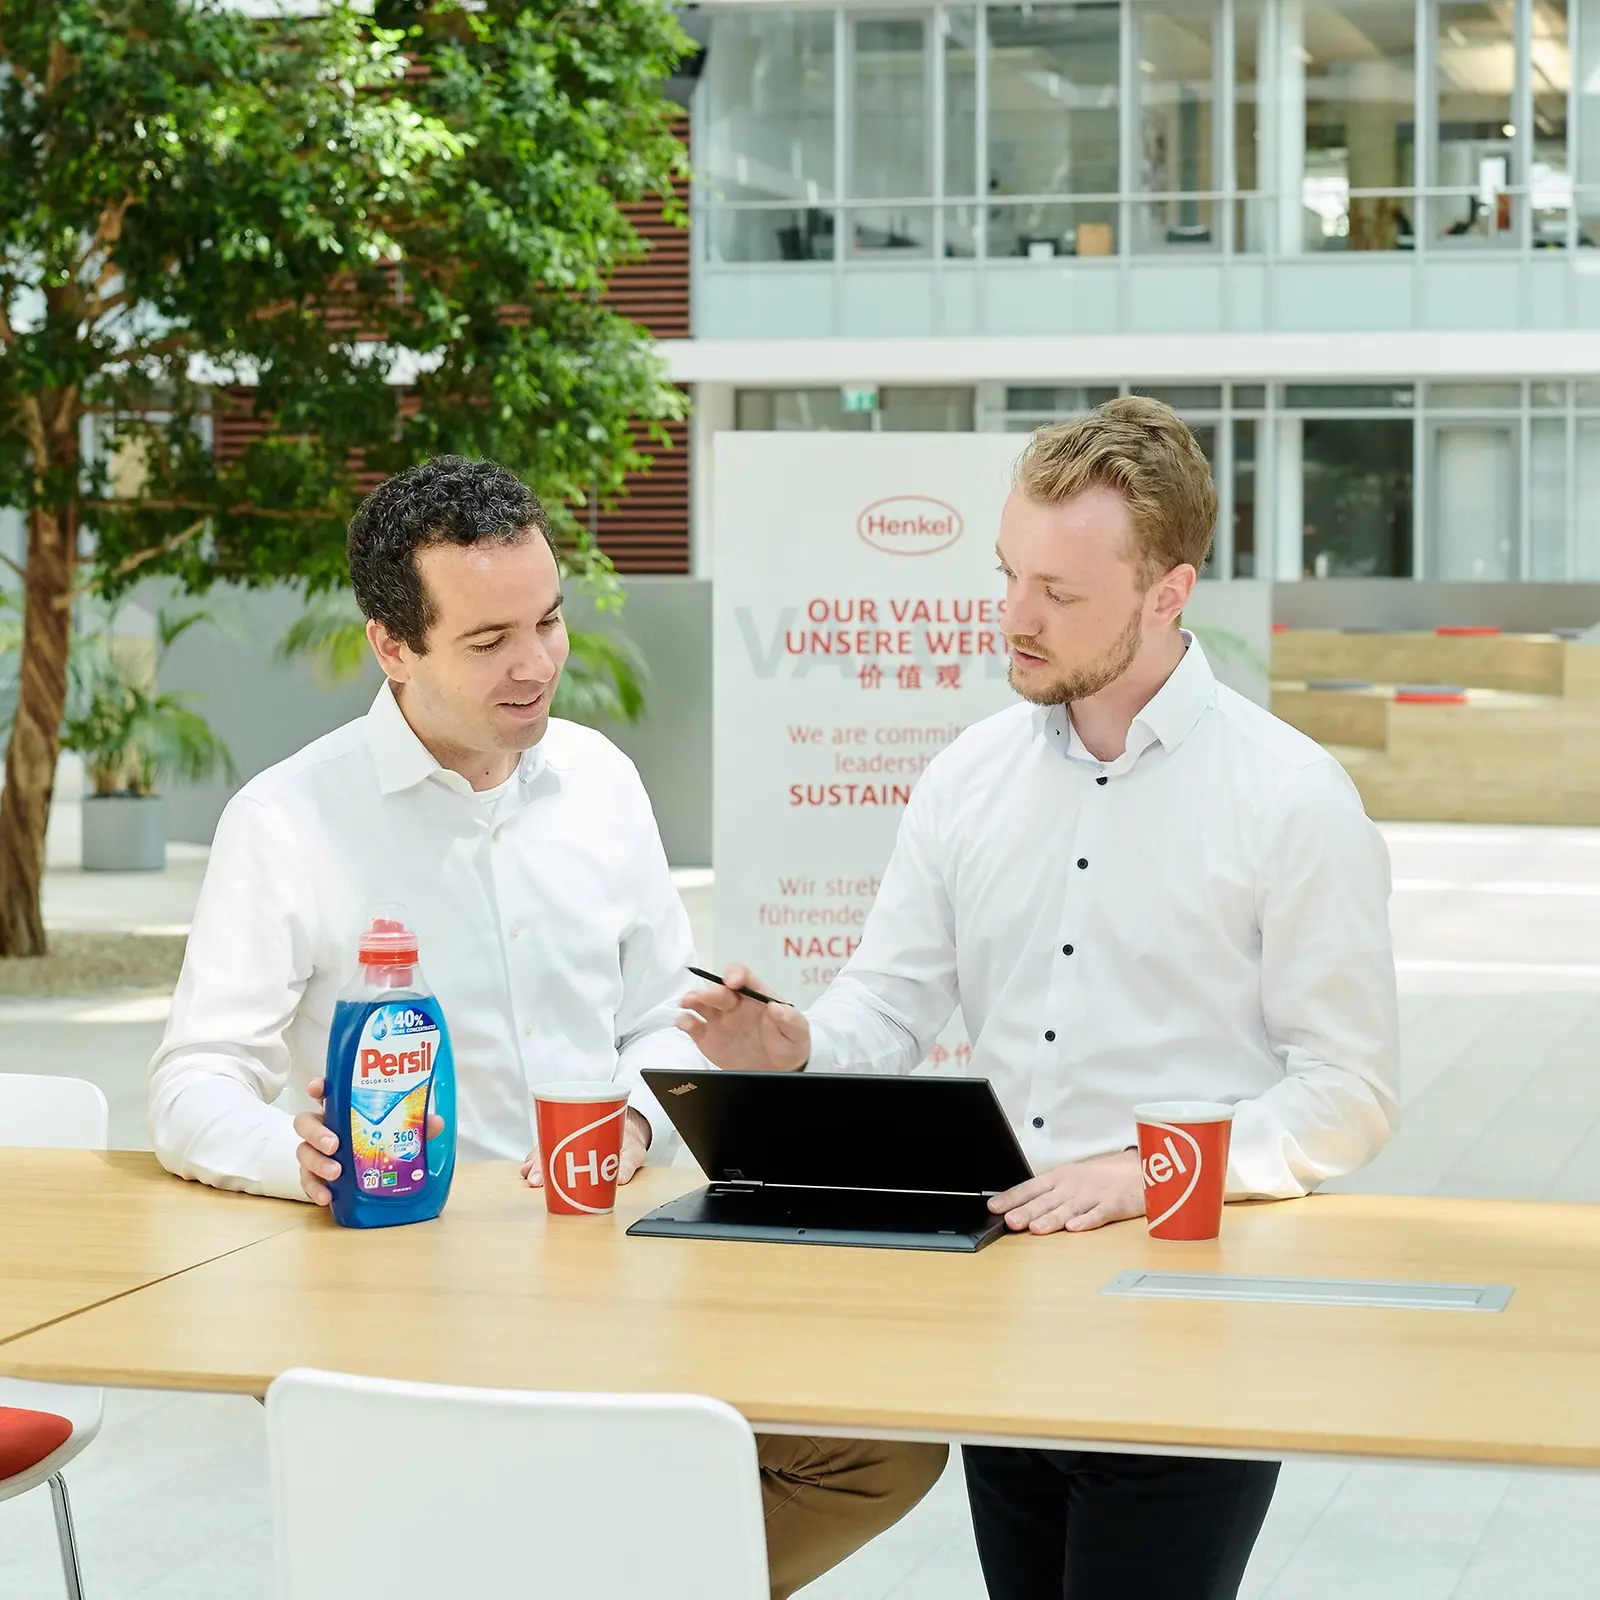 Dos hombres de pie a lado de una mesa con una botella de Persil y una computadora portátil.